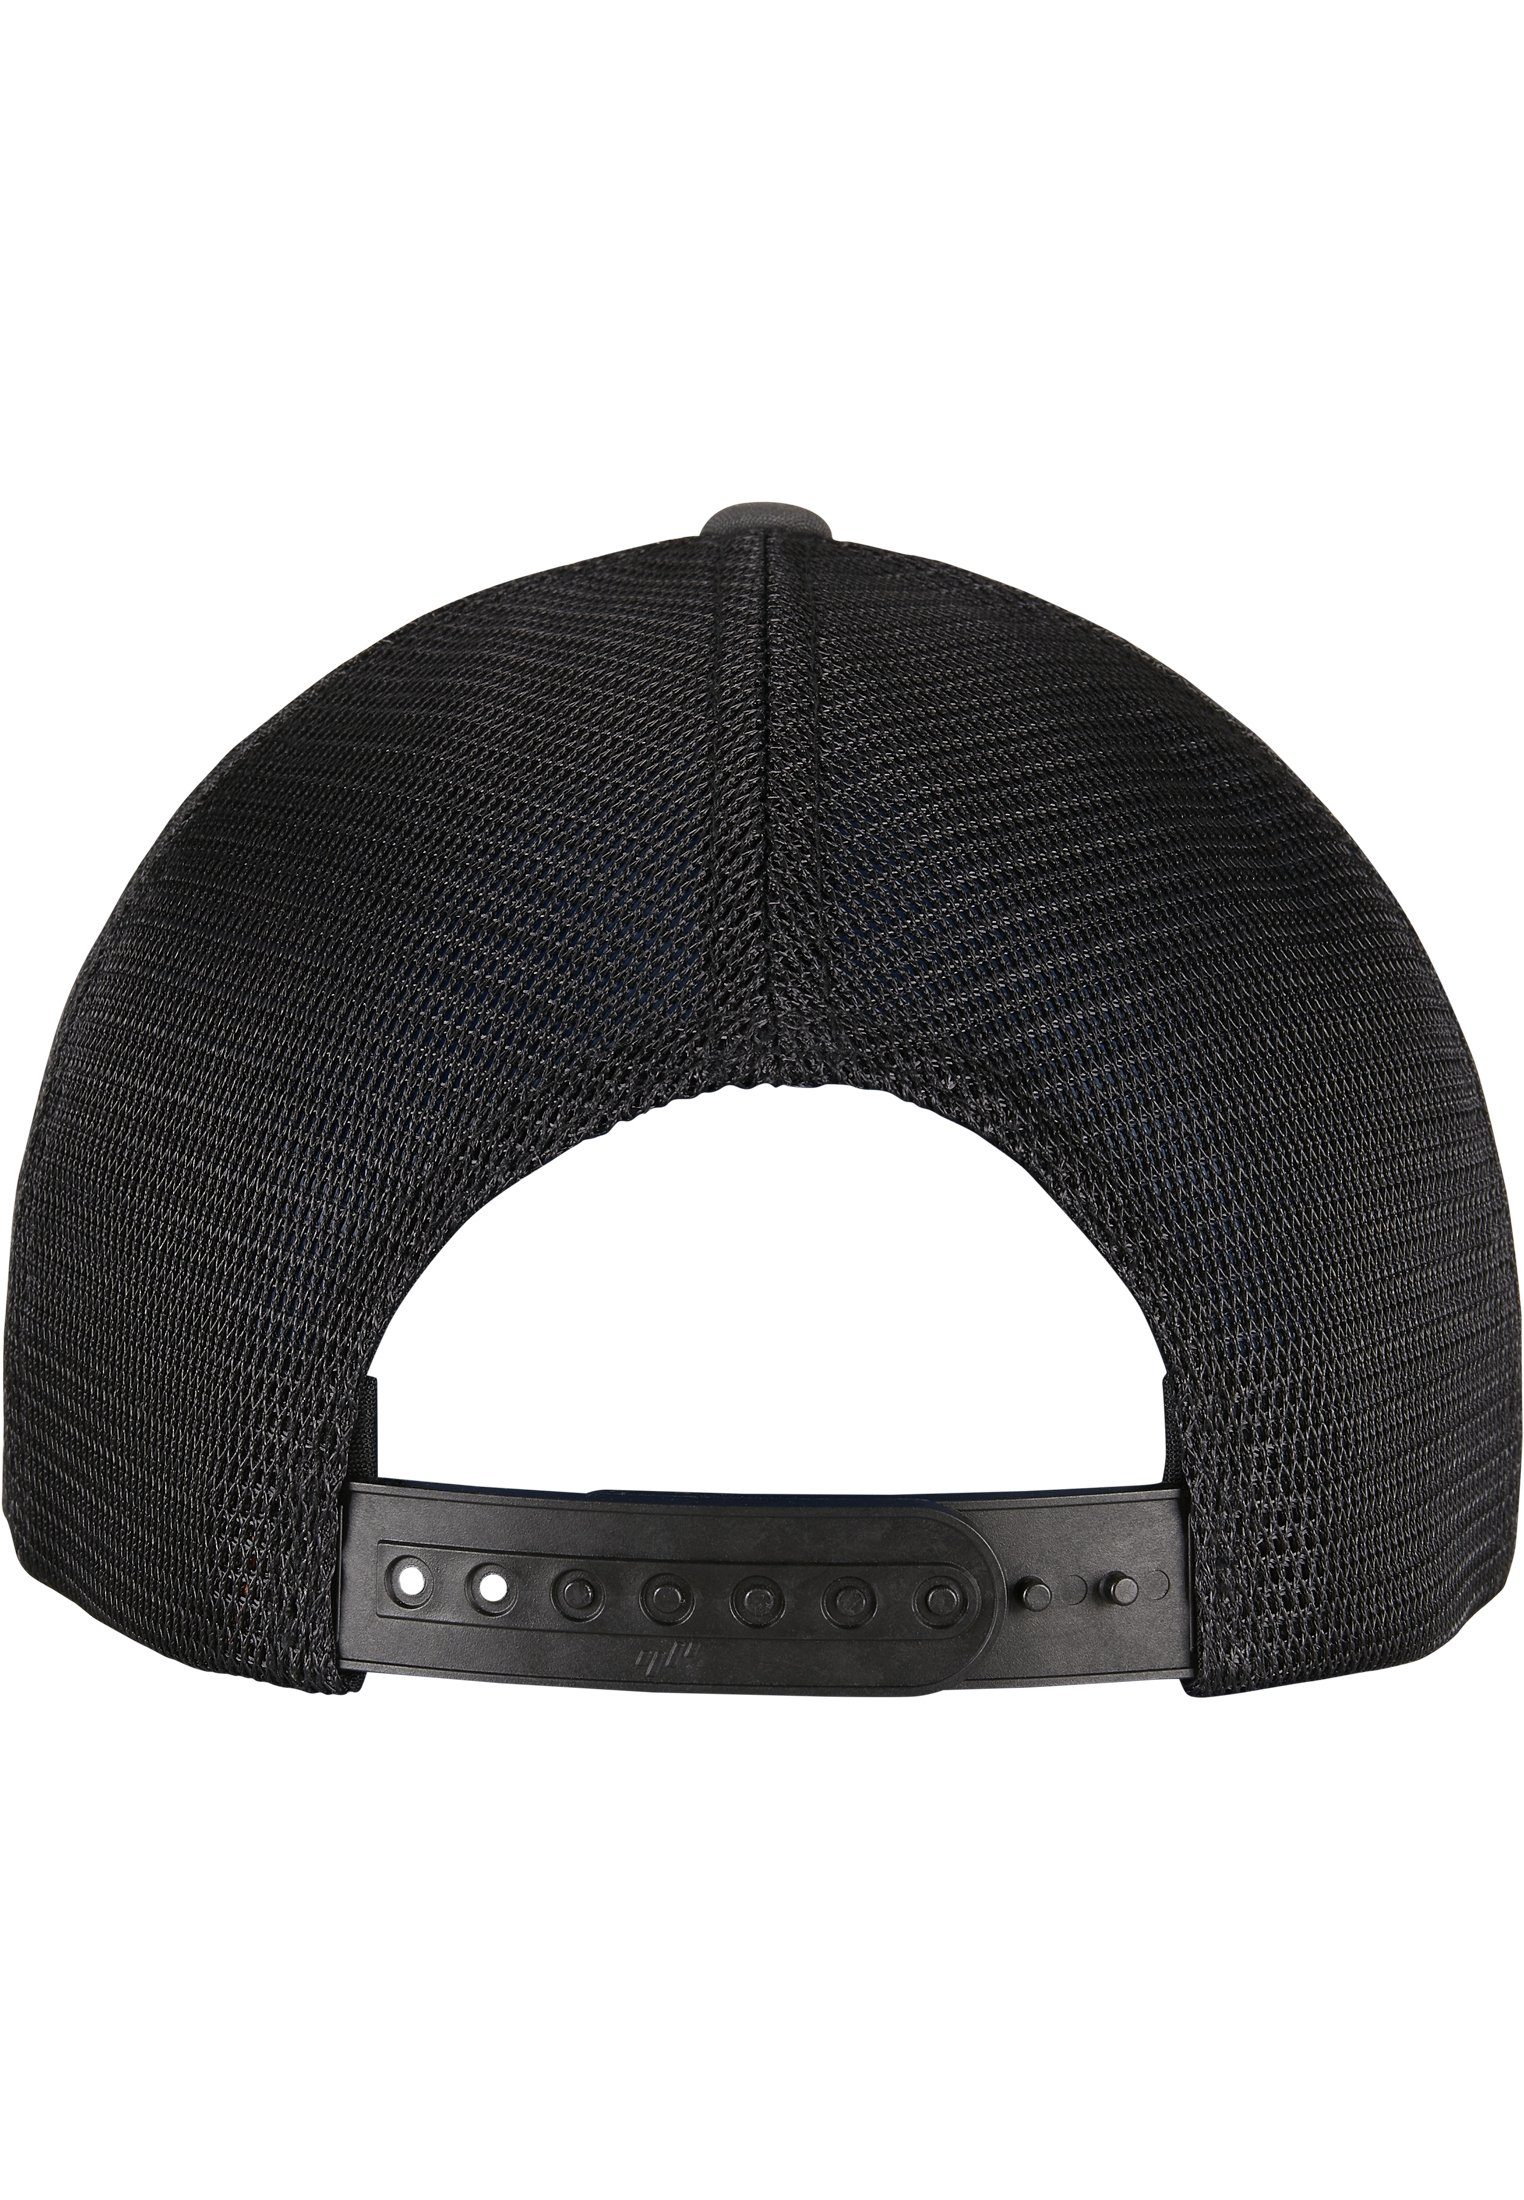 Cap Flexfit Cap Flex charcoal/black Omnimesh Accessoires 2-Tone 360°